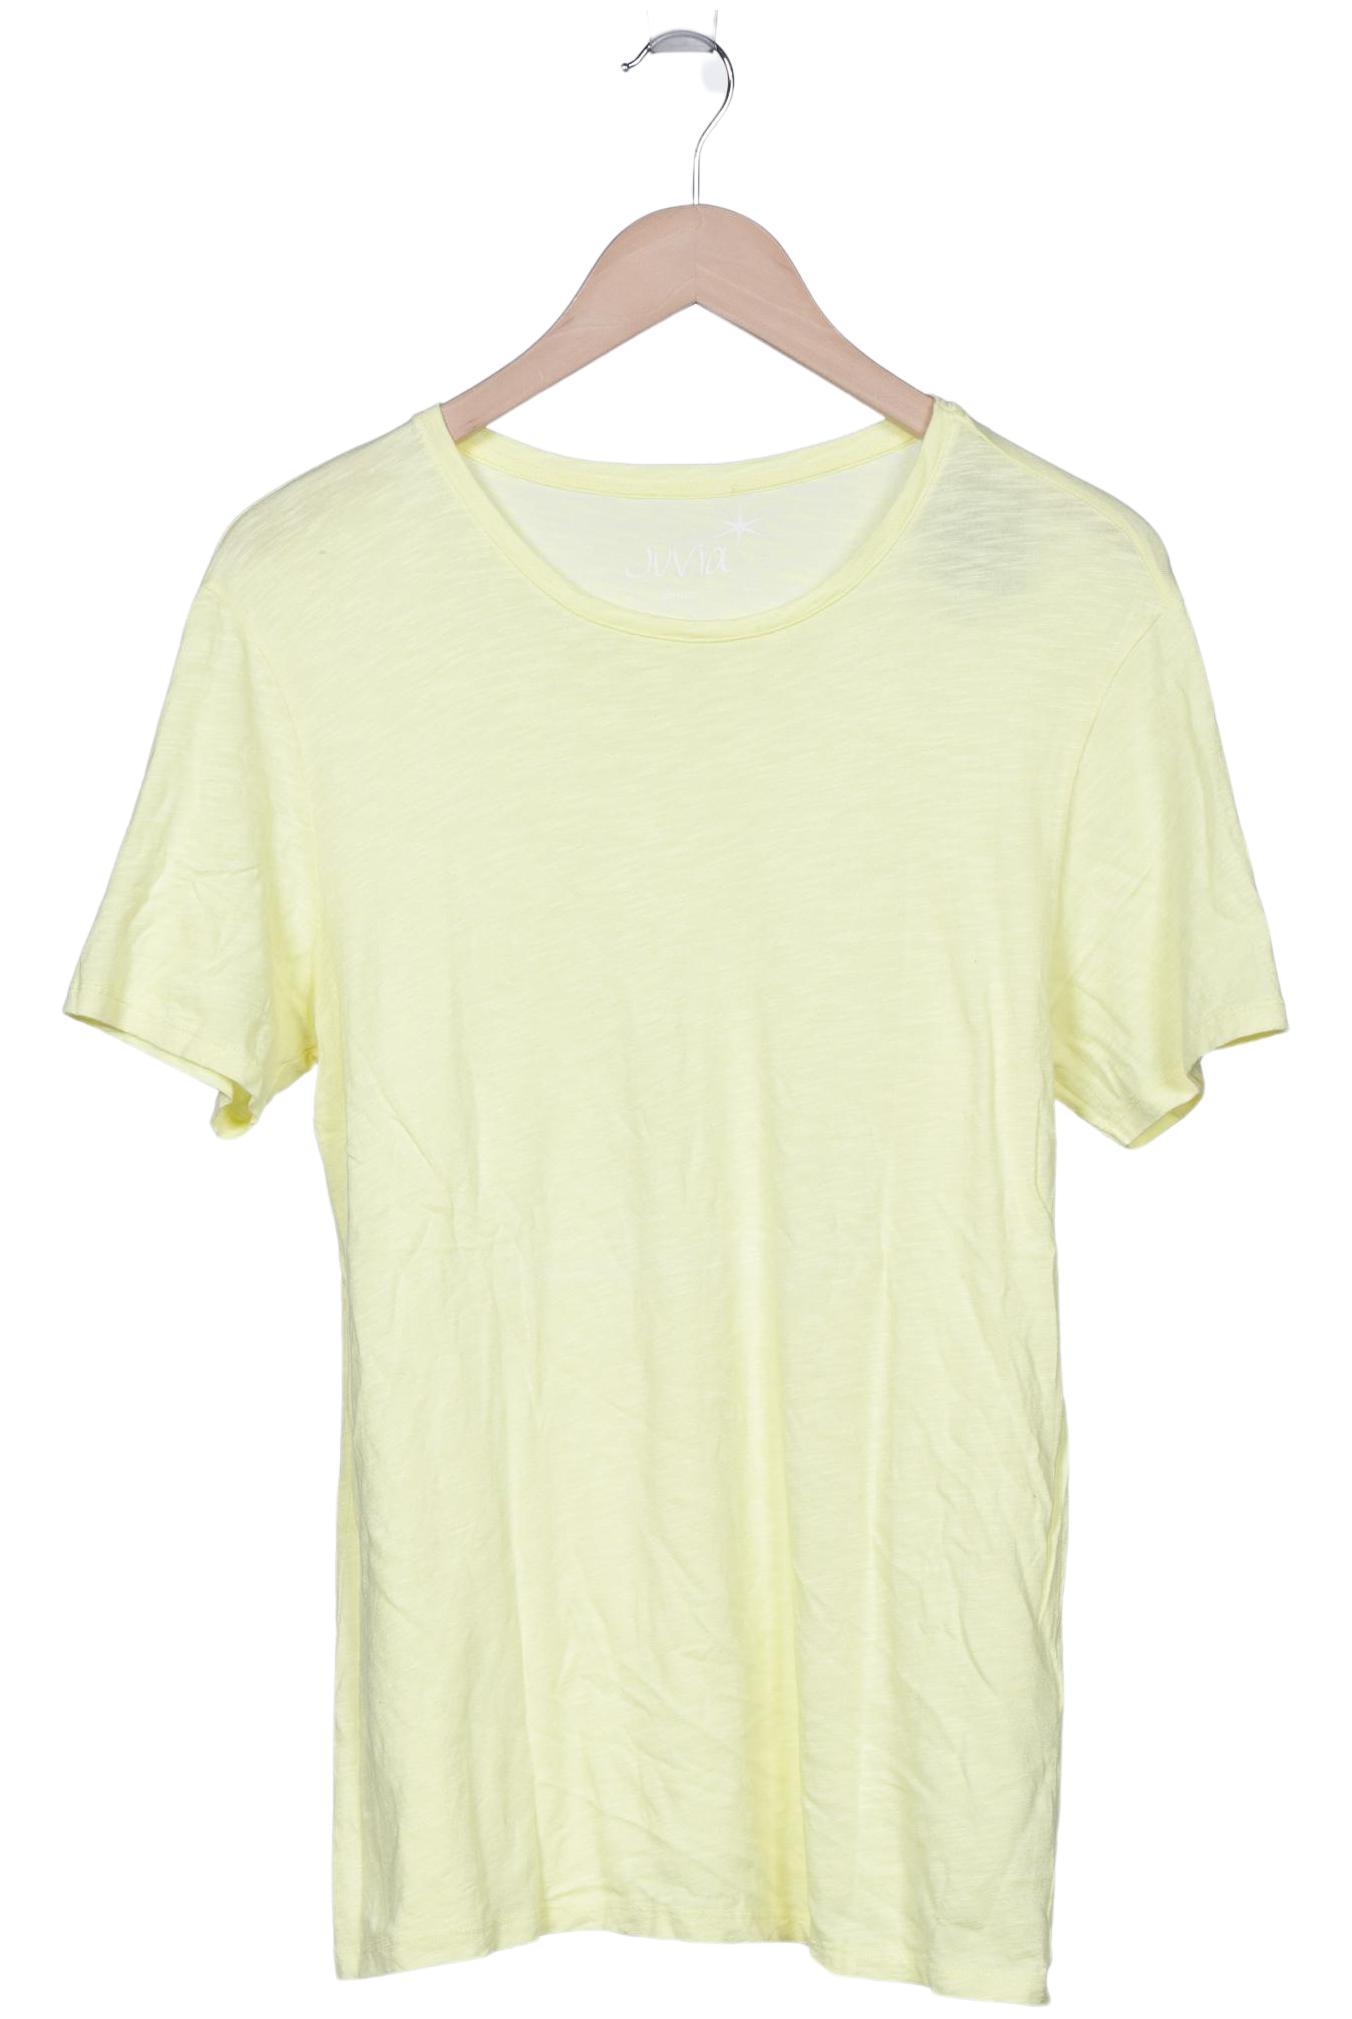 Juvia Herren T-Shirt, gelb, Gr. 46 von Juvia